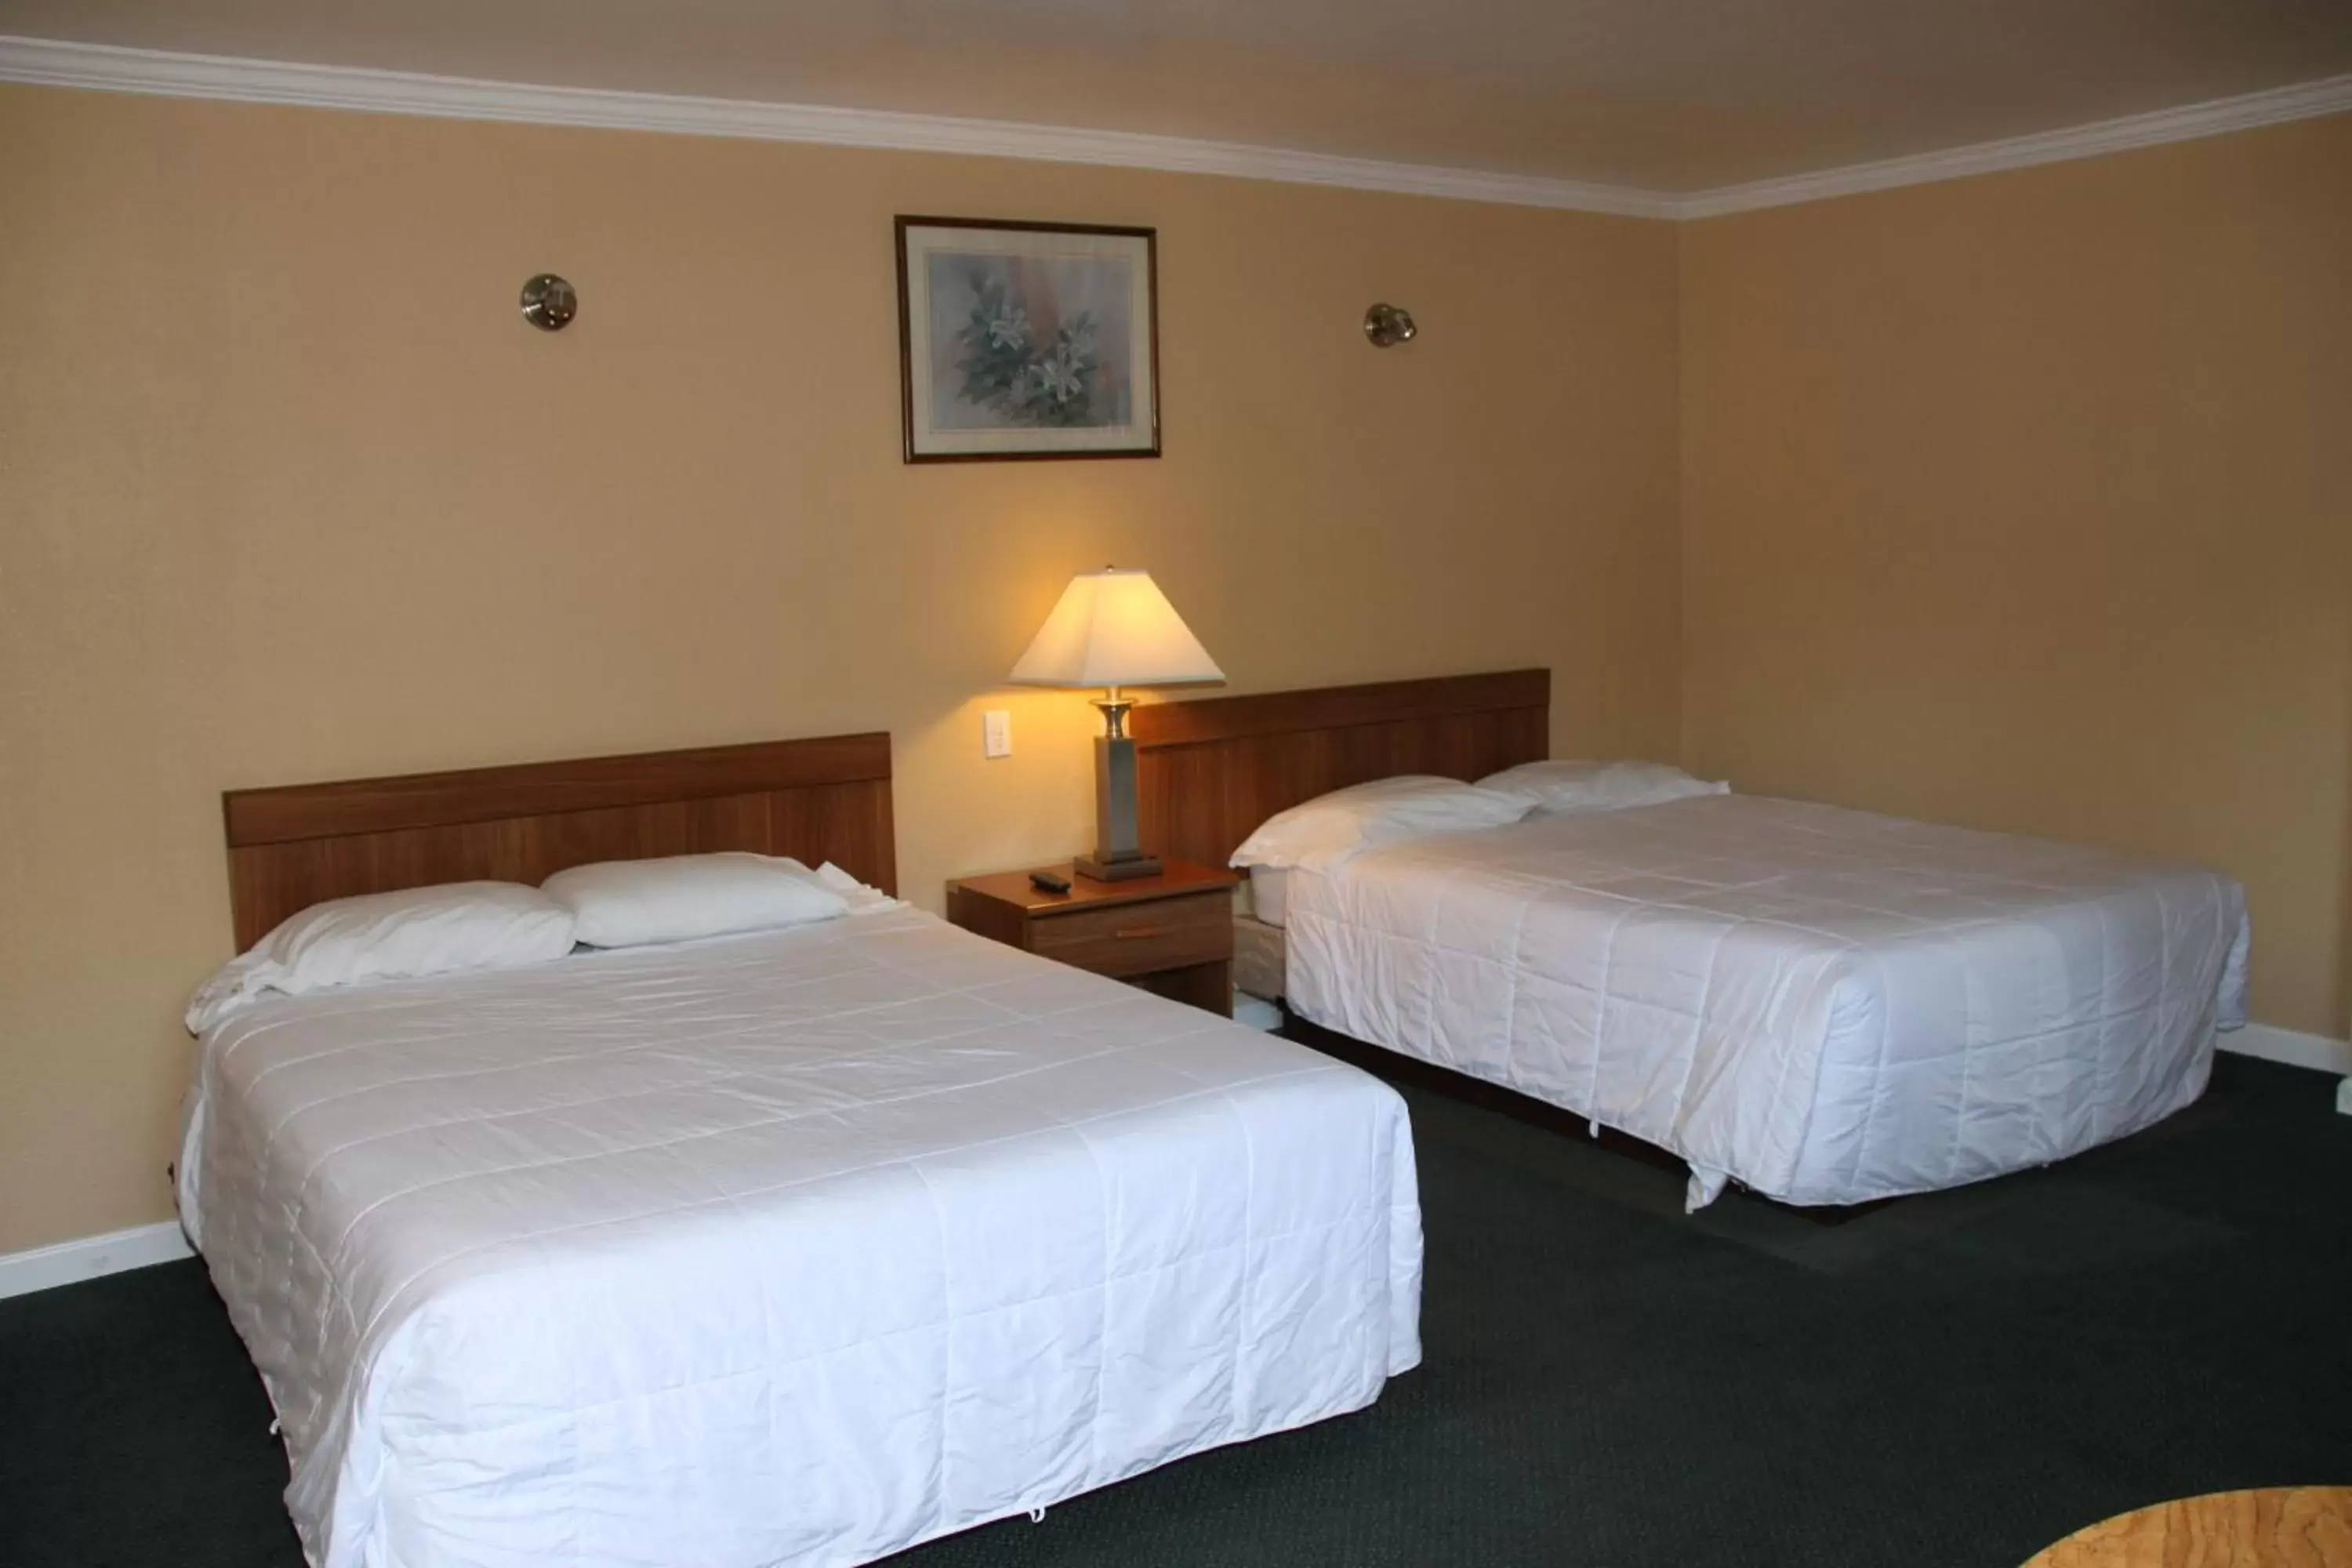 Bed, Room Photo in Villa Inn